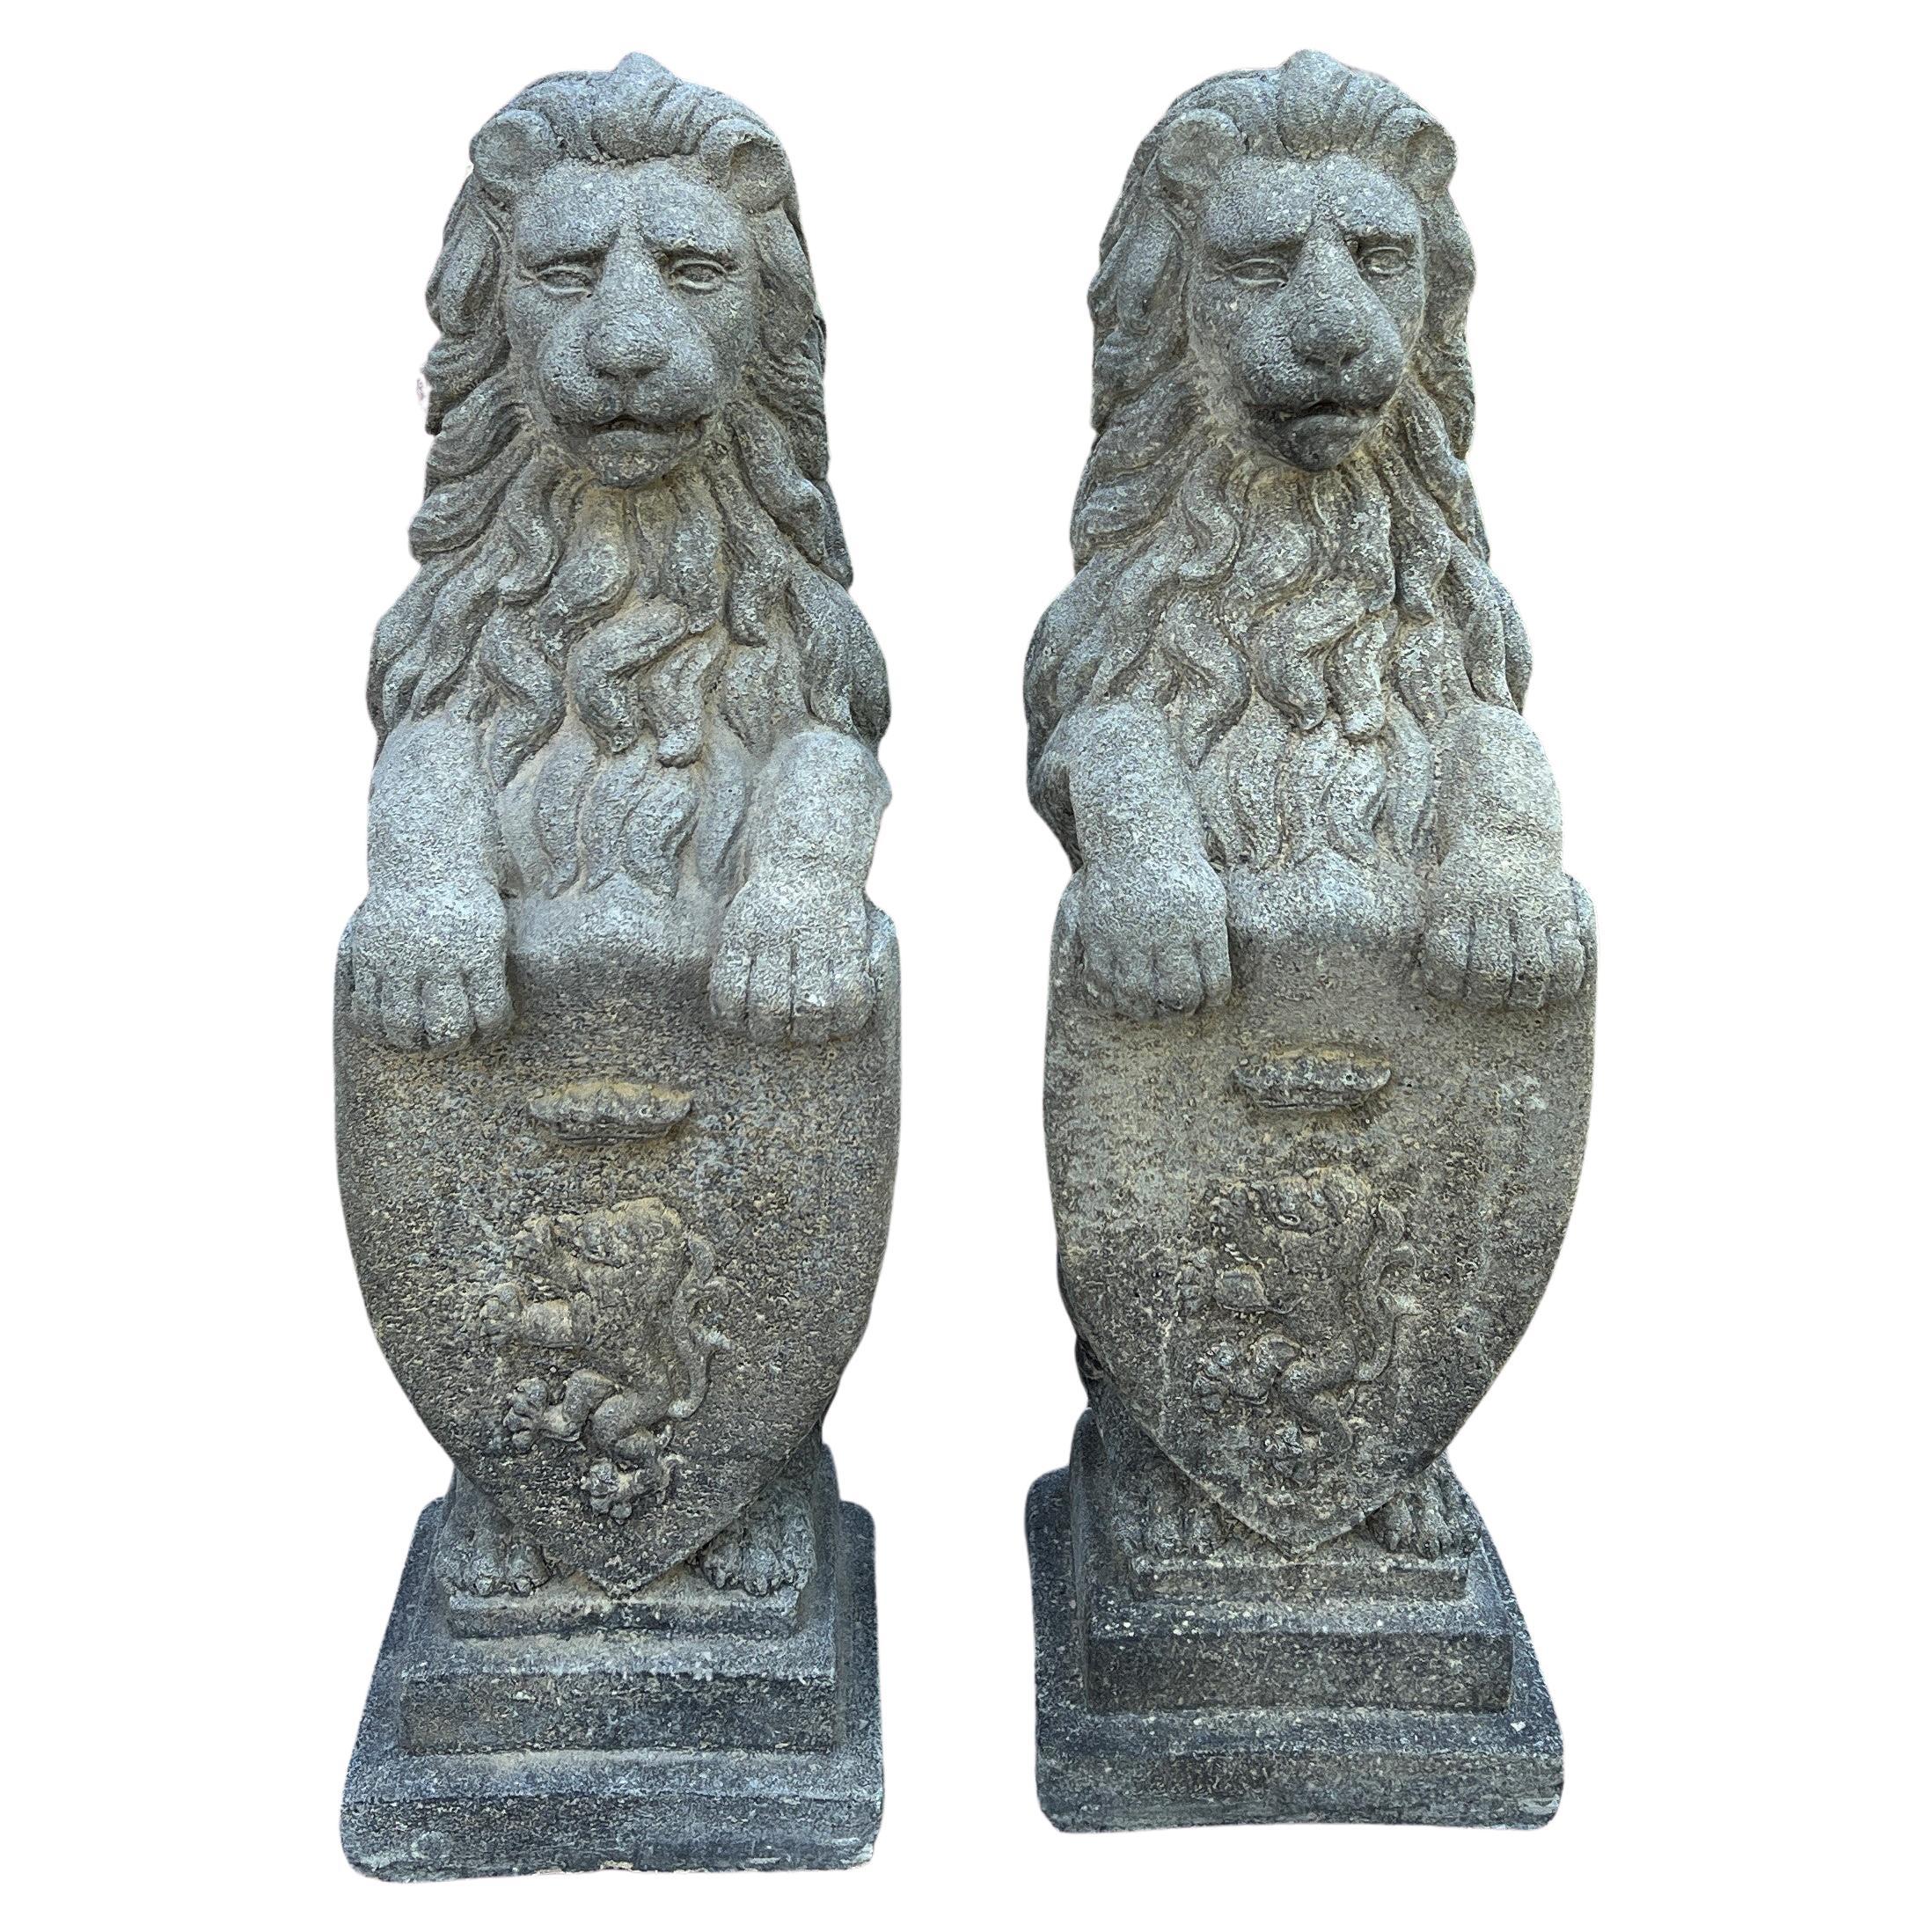 Vintage English Statues Garden Figures Lions Shield Cast Stone Pair #2